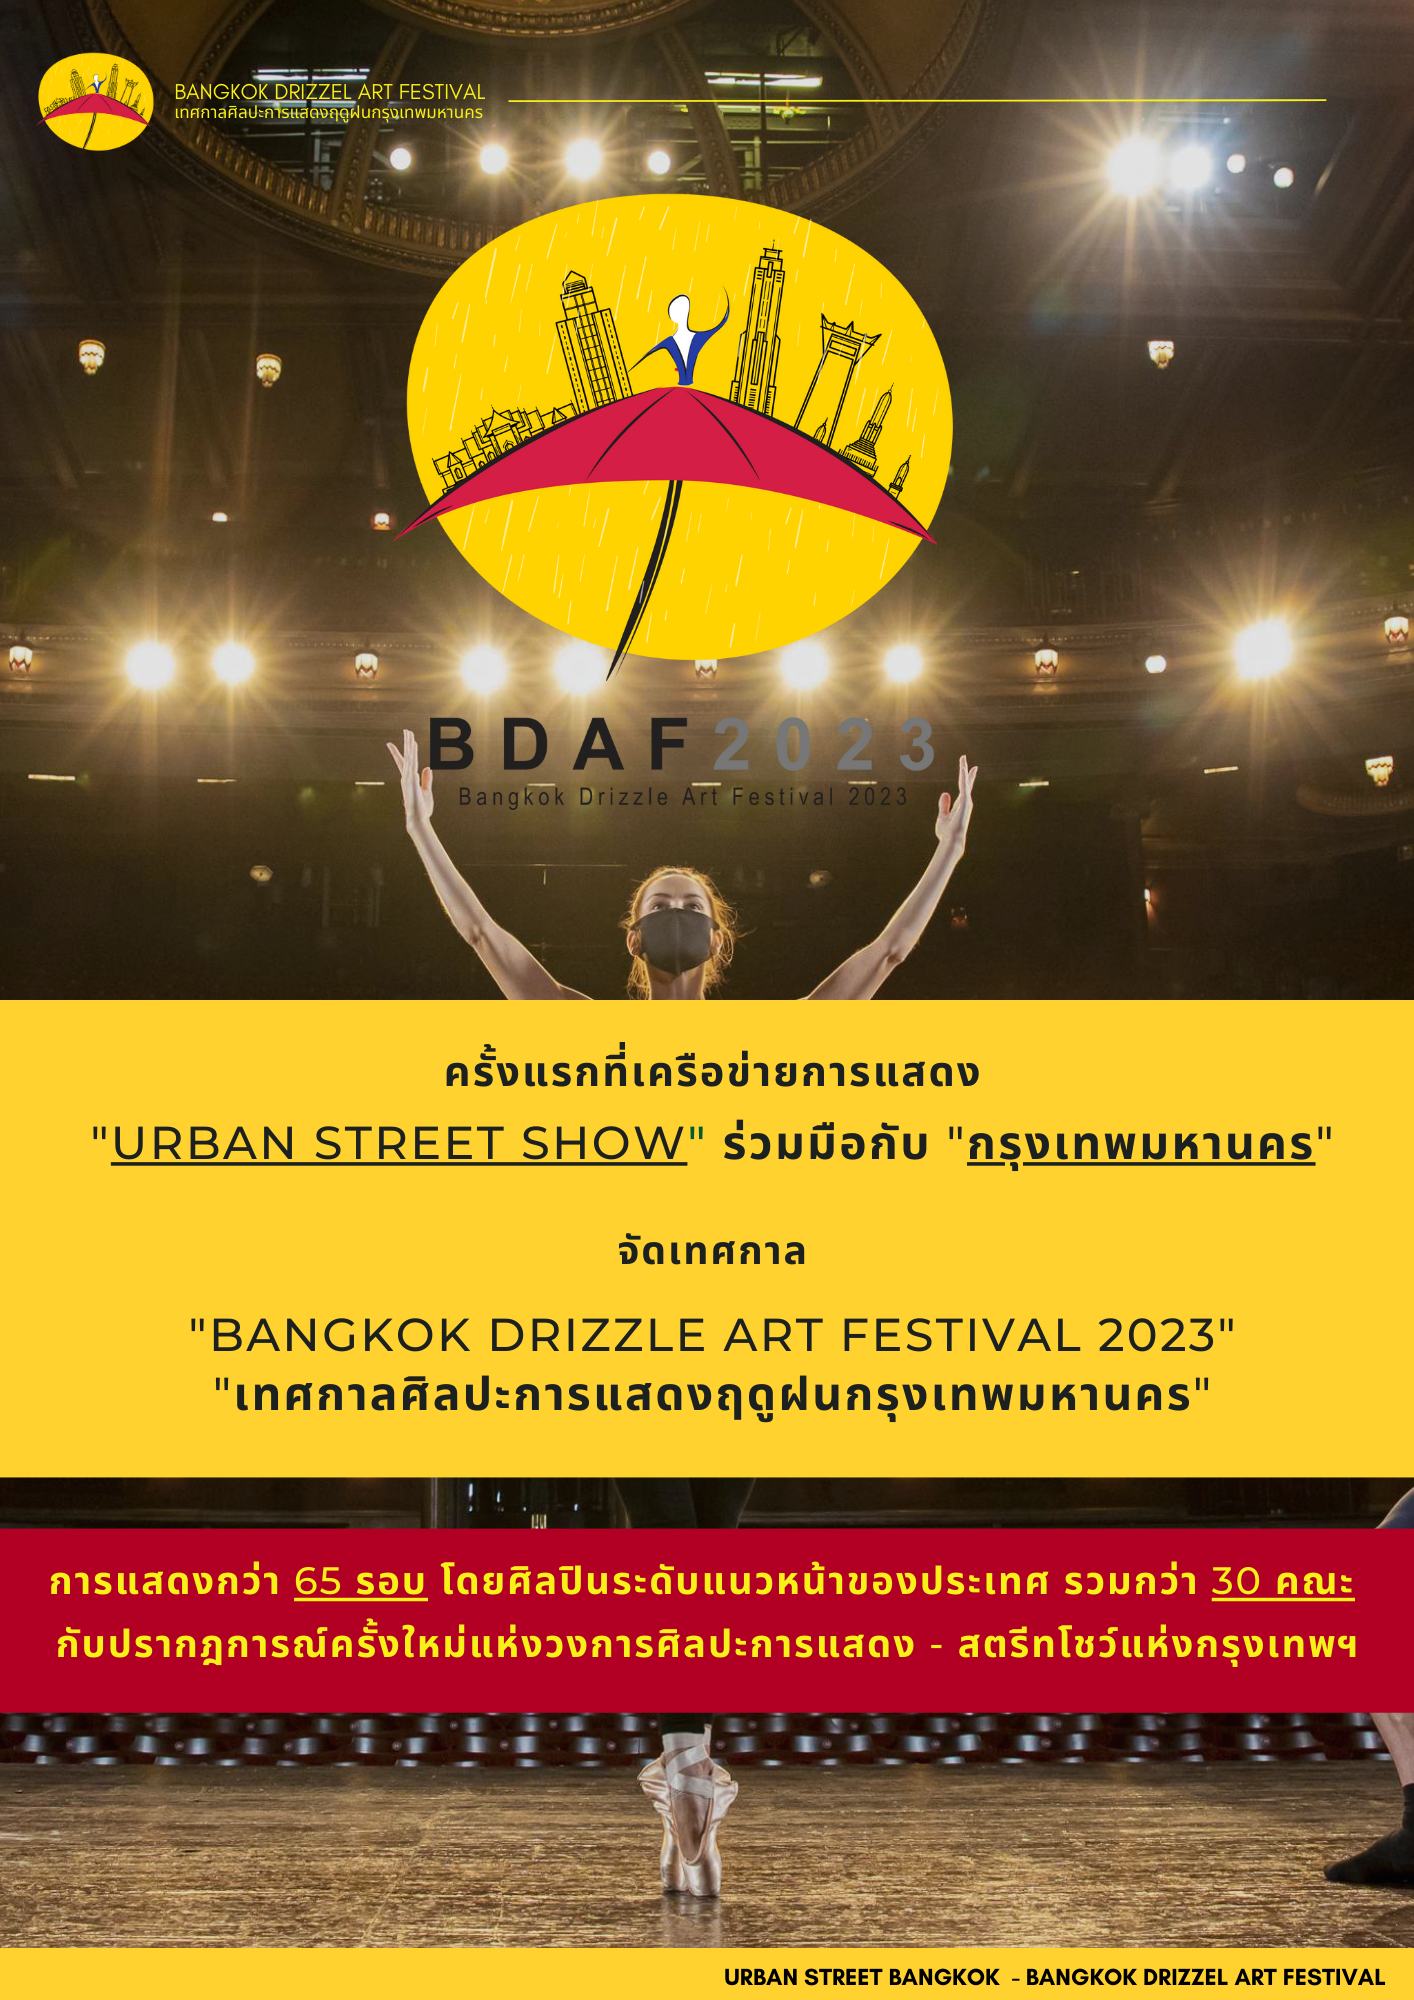 VK.Vich Vichayut Kanungchoti วิชยุตม์ คนึงโชติ มายากล รับแสดงมายากล Magic Class รับสอนมายากล มายากลเวที การแสดง Stage Magic เทศกาลศิลปะการแสดงฤดูฝนกรุงเทพมหานคร 2023 Bangkok Drizzle Theatre Show Festival 2023